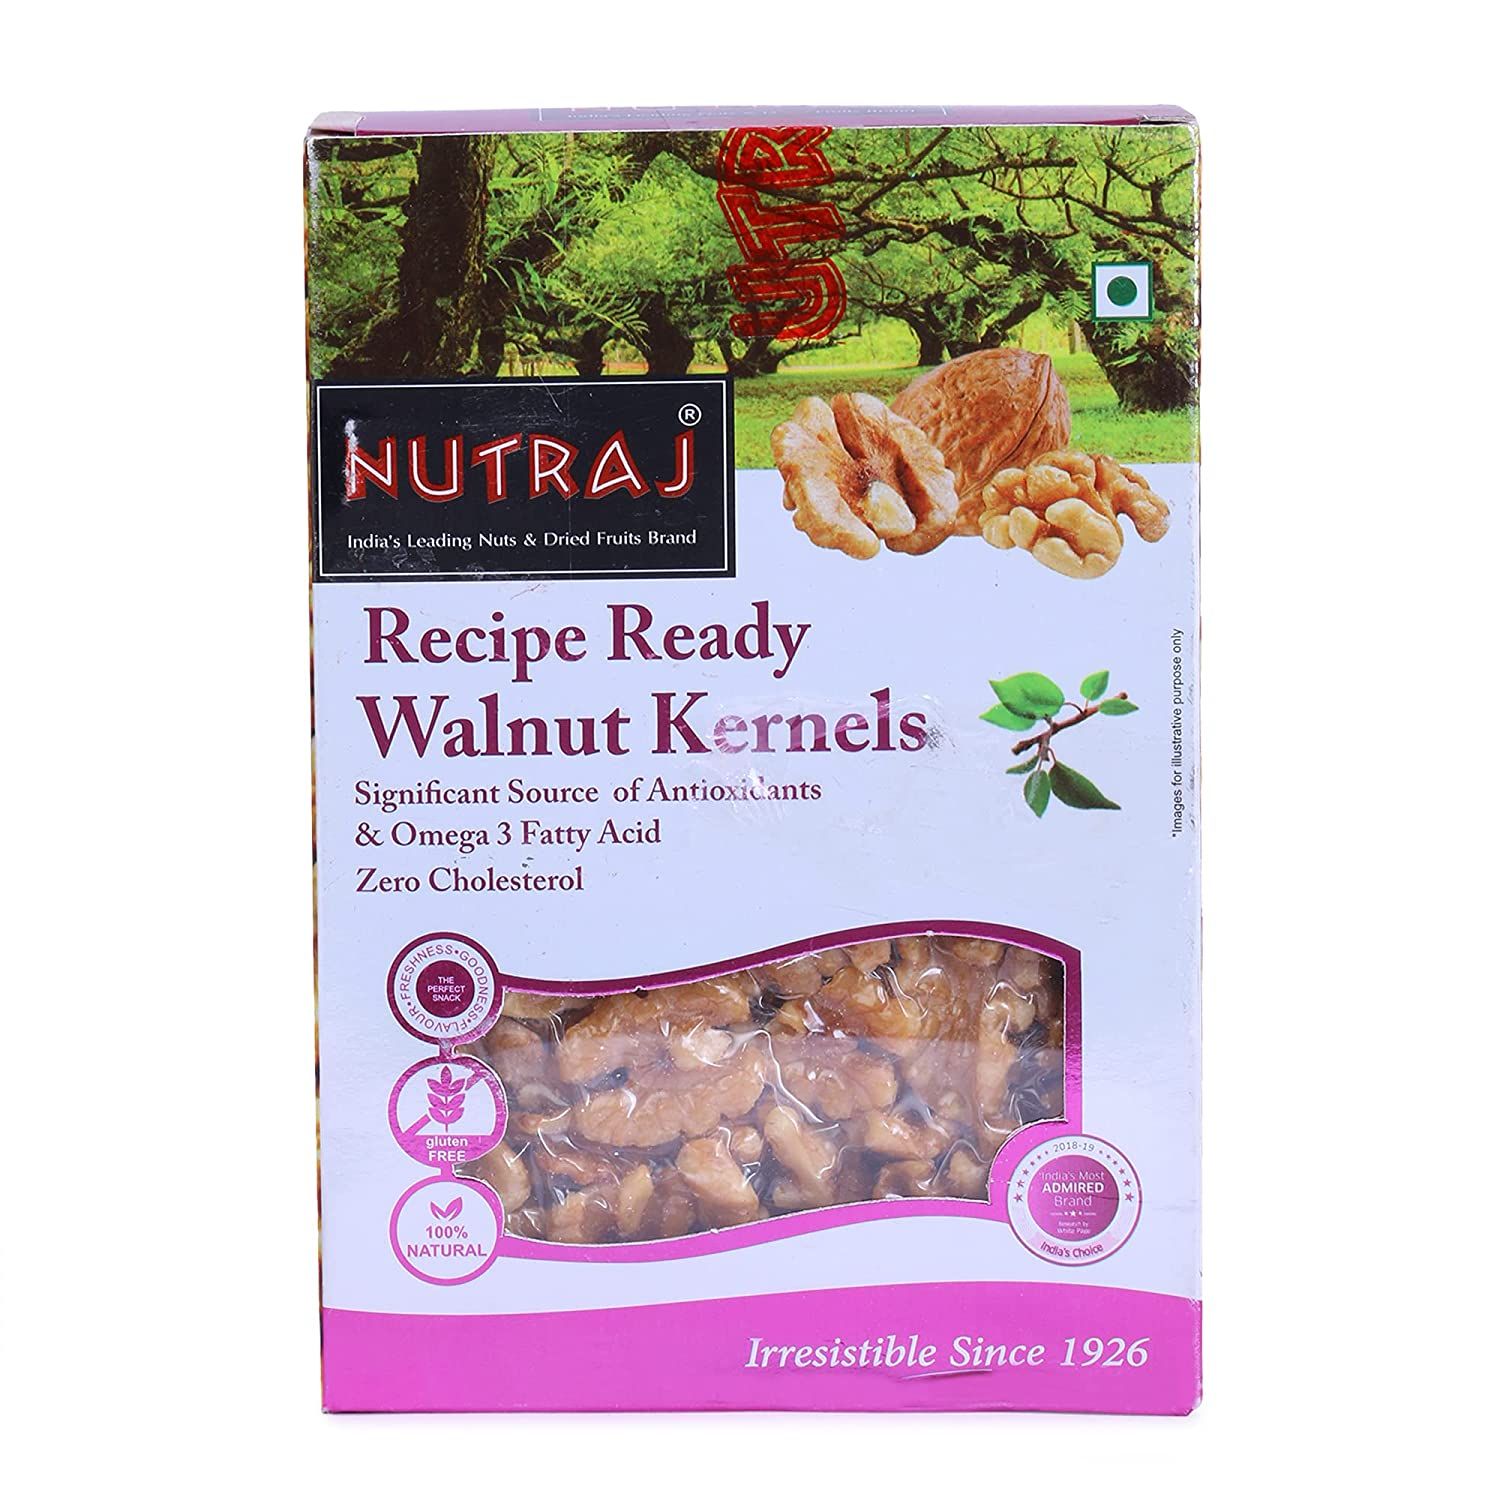 Nutraj Recipe Ready Walnut Kernels Image